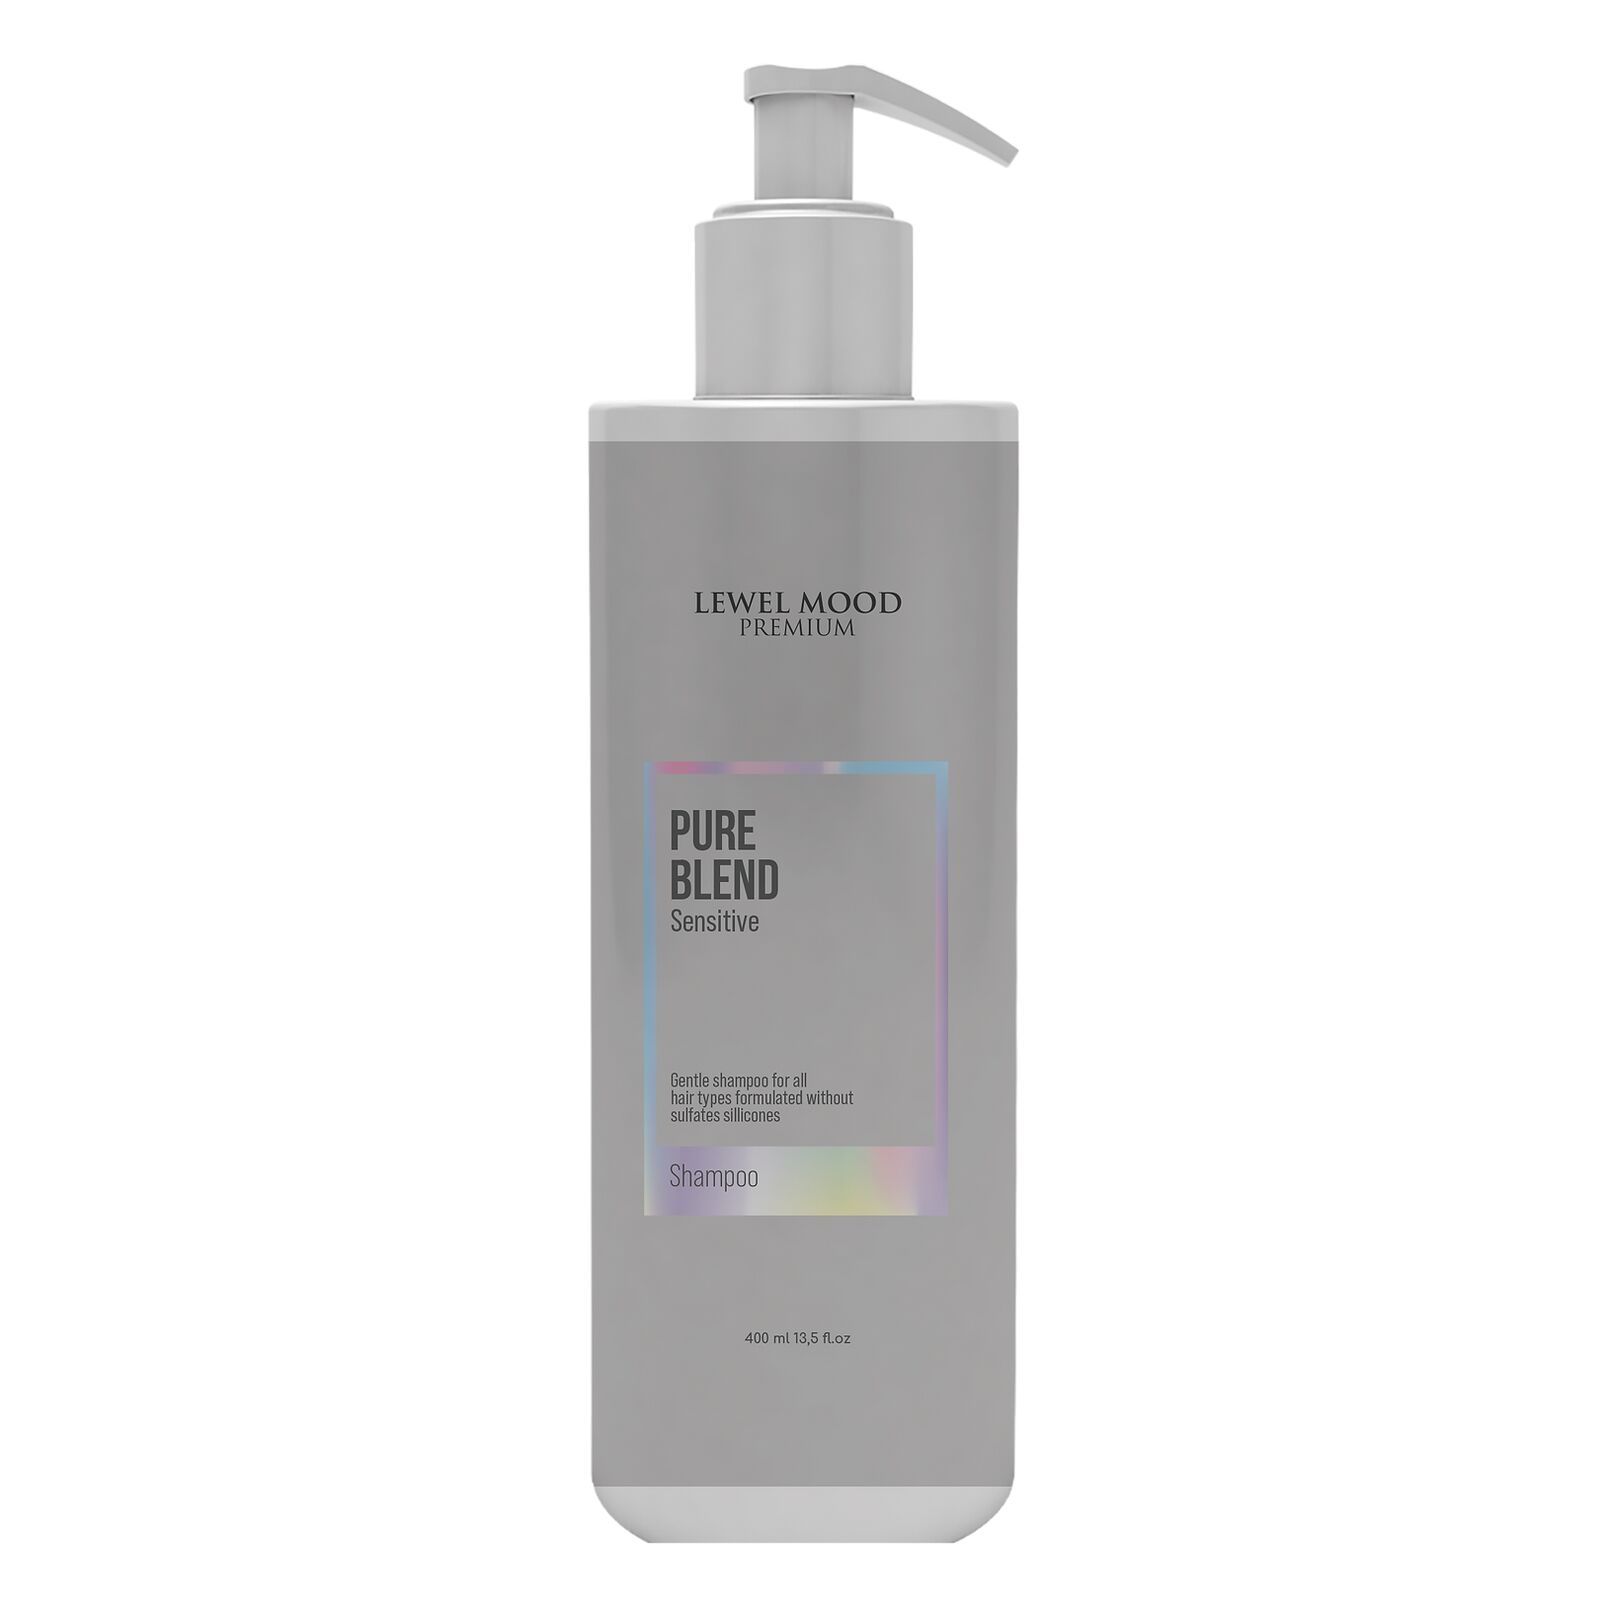 Lewel Mood Premium Pure Blend Shampoo - 400 ml - Sülfatsız - Işıltı Şampuan